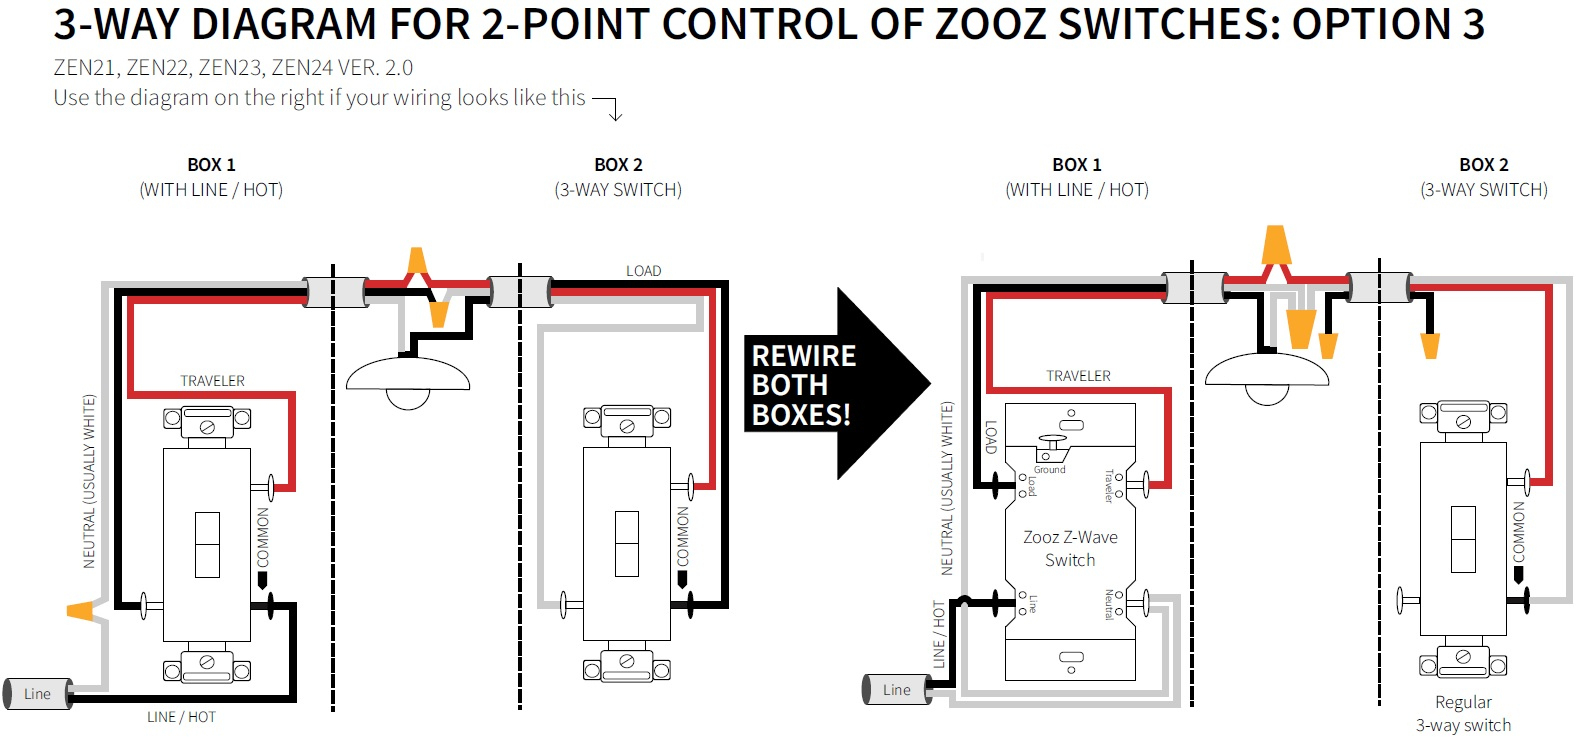 3-Way Diagrams For Zen21, Zen22, Zen23, And Zen24 Ver. 2.0 Switches - Three Way Wiring Diagram